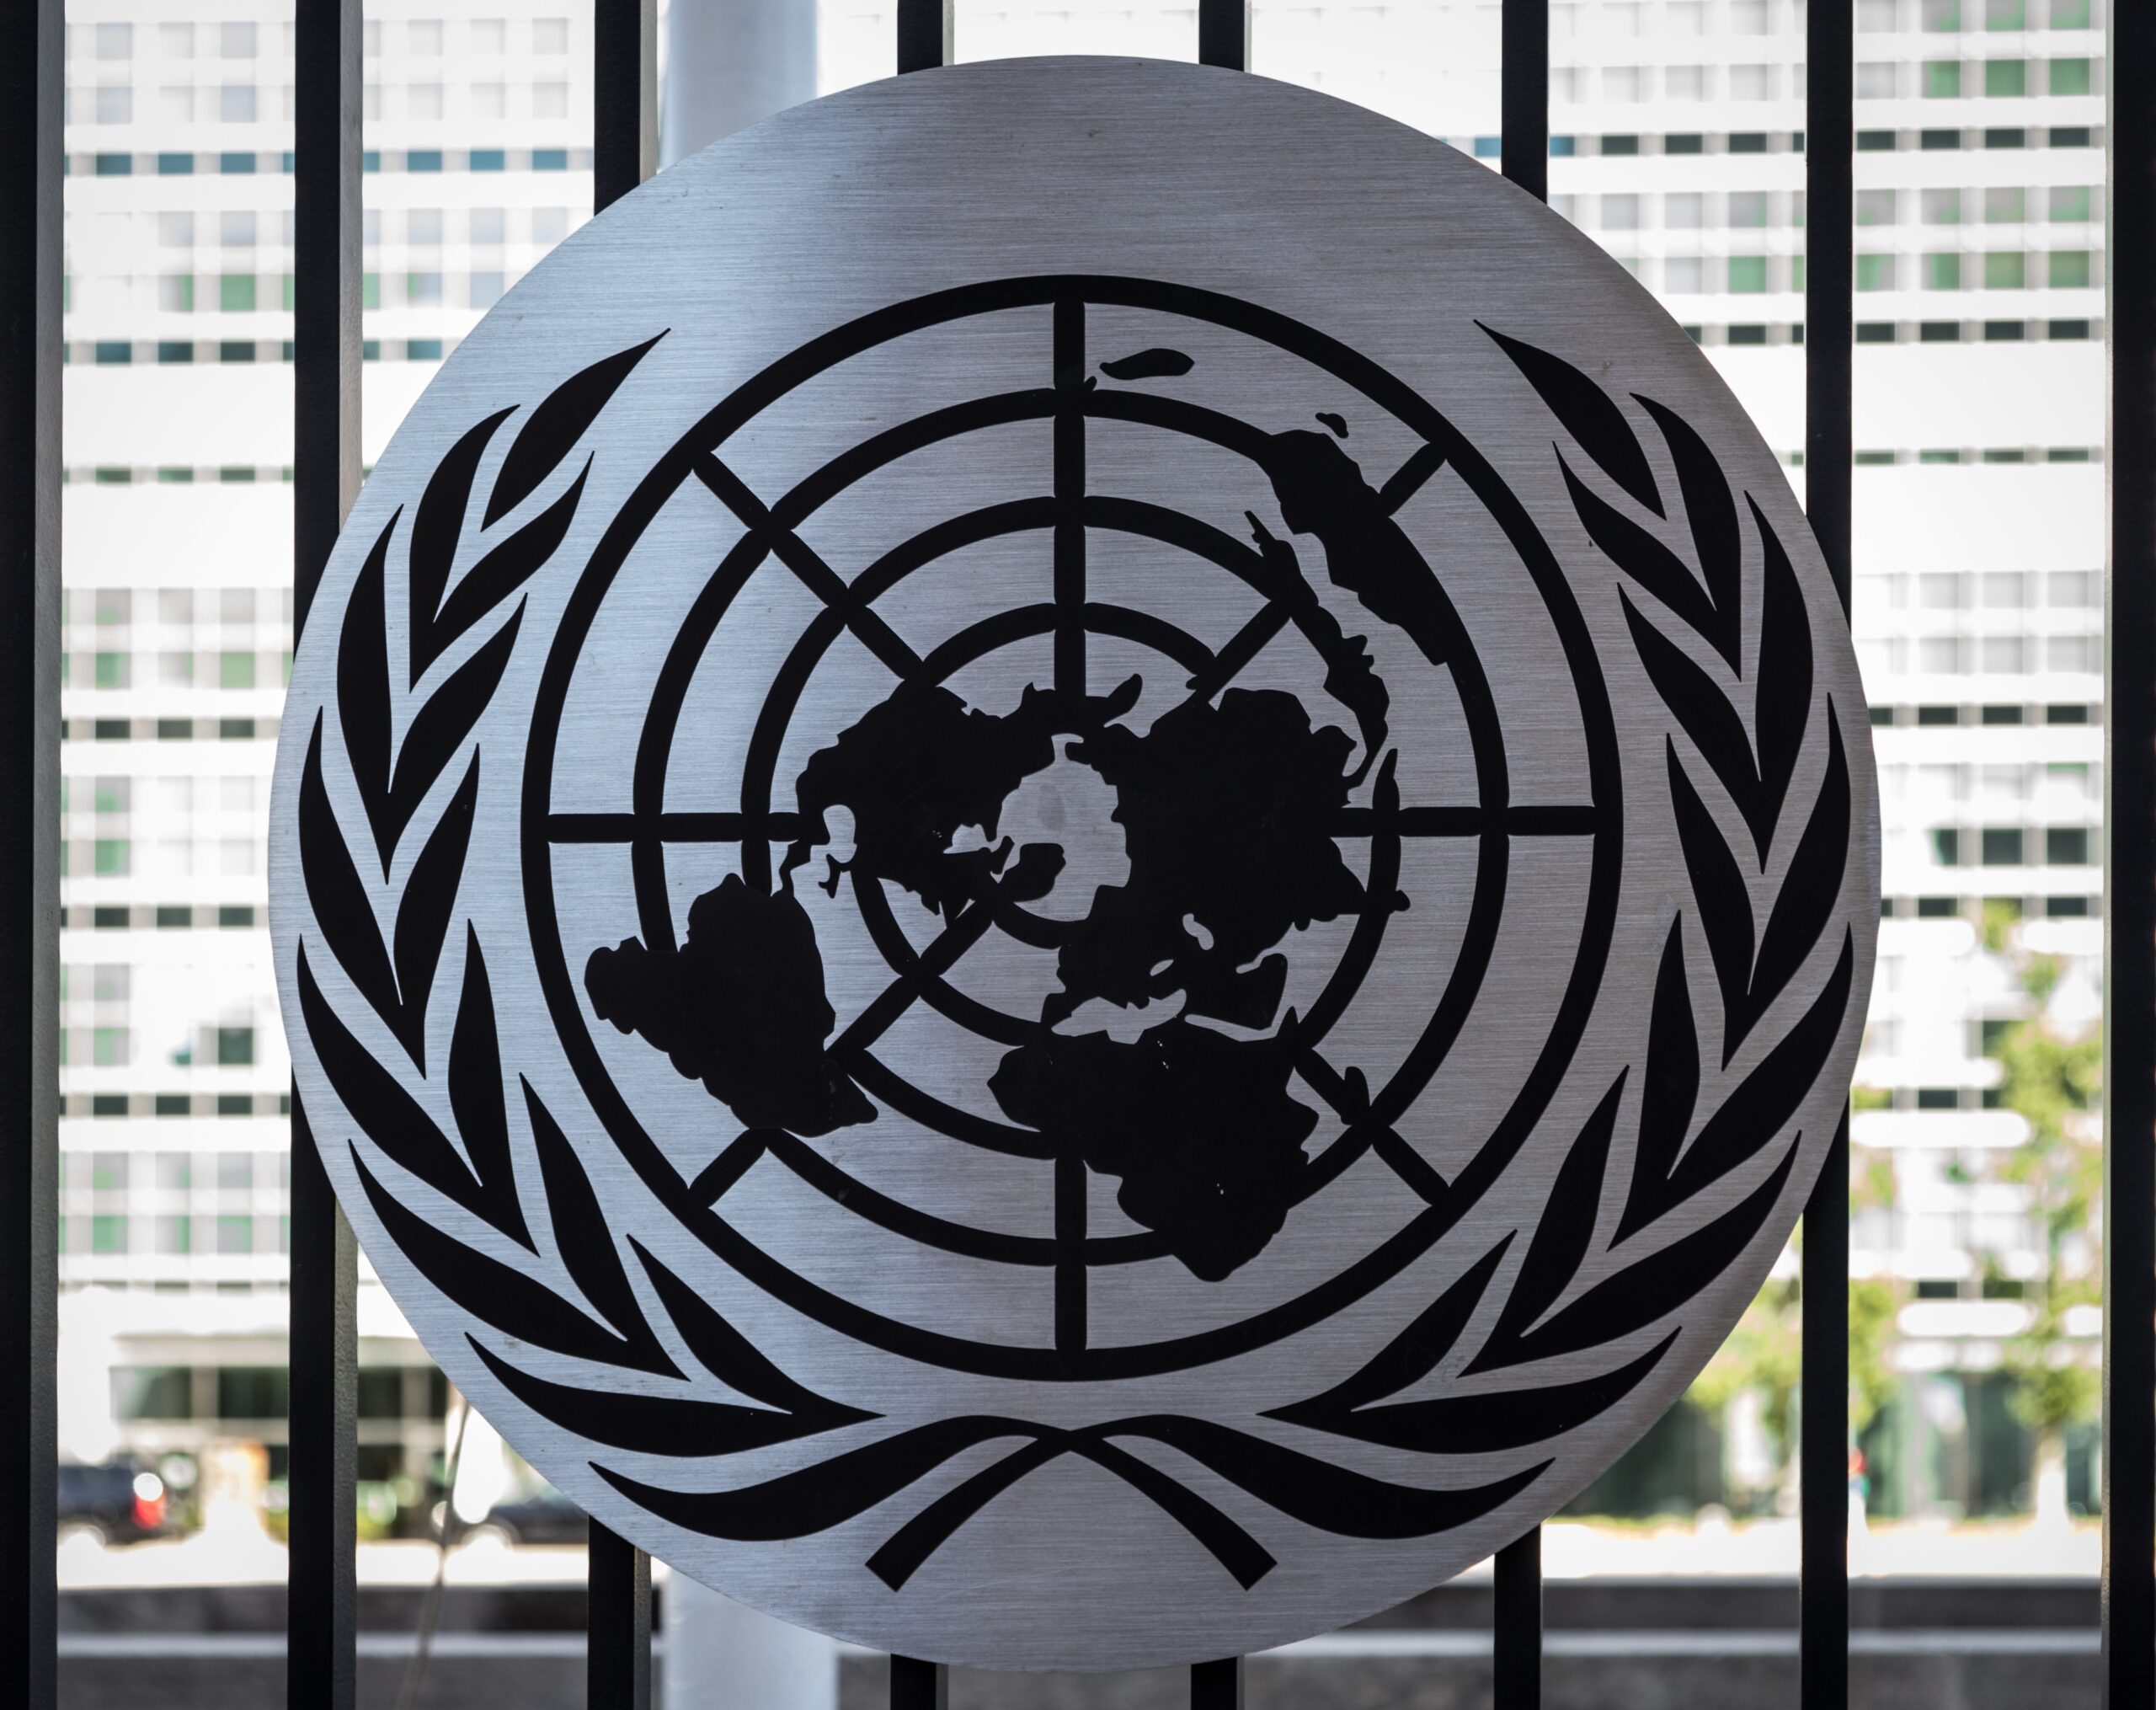 UN Symbol